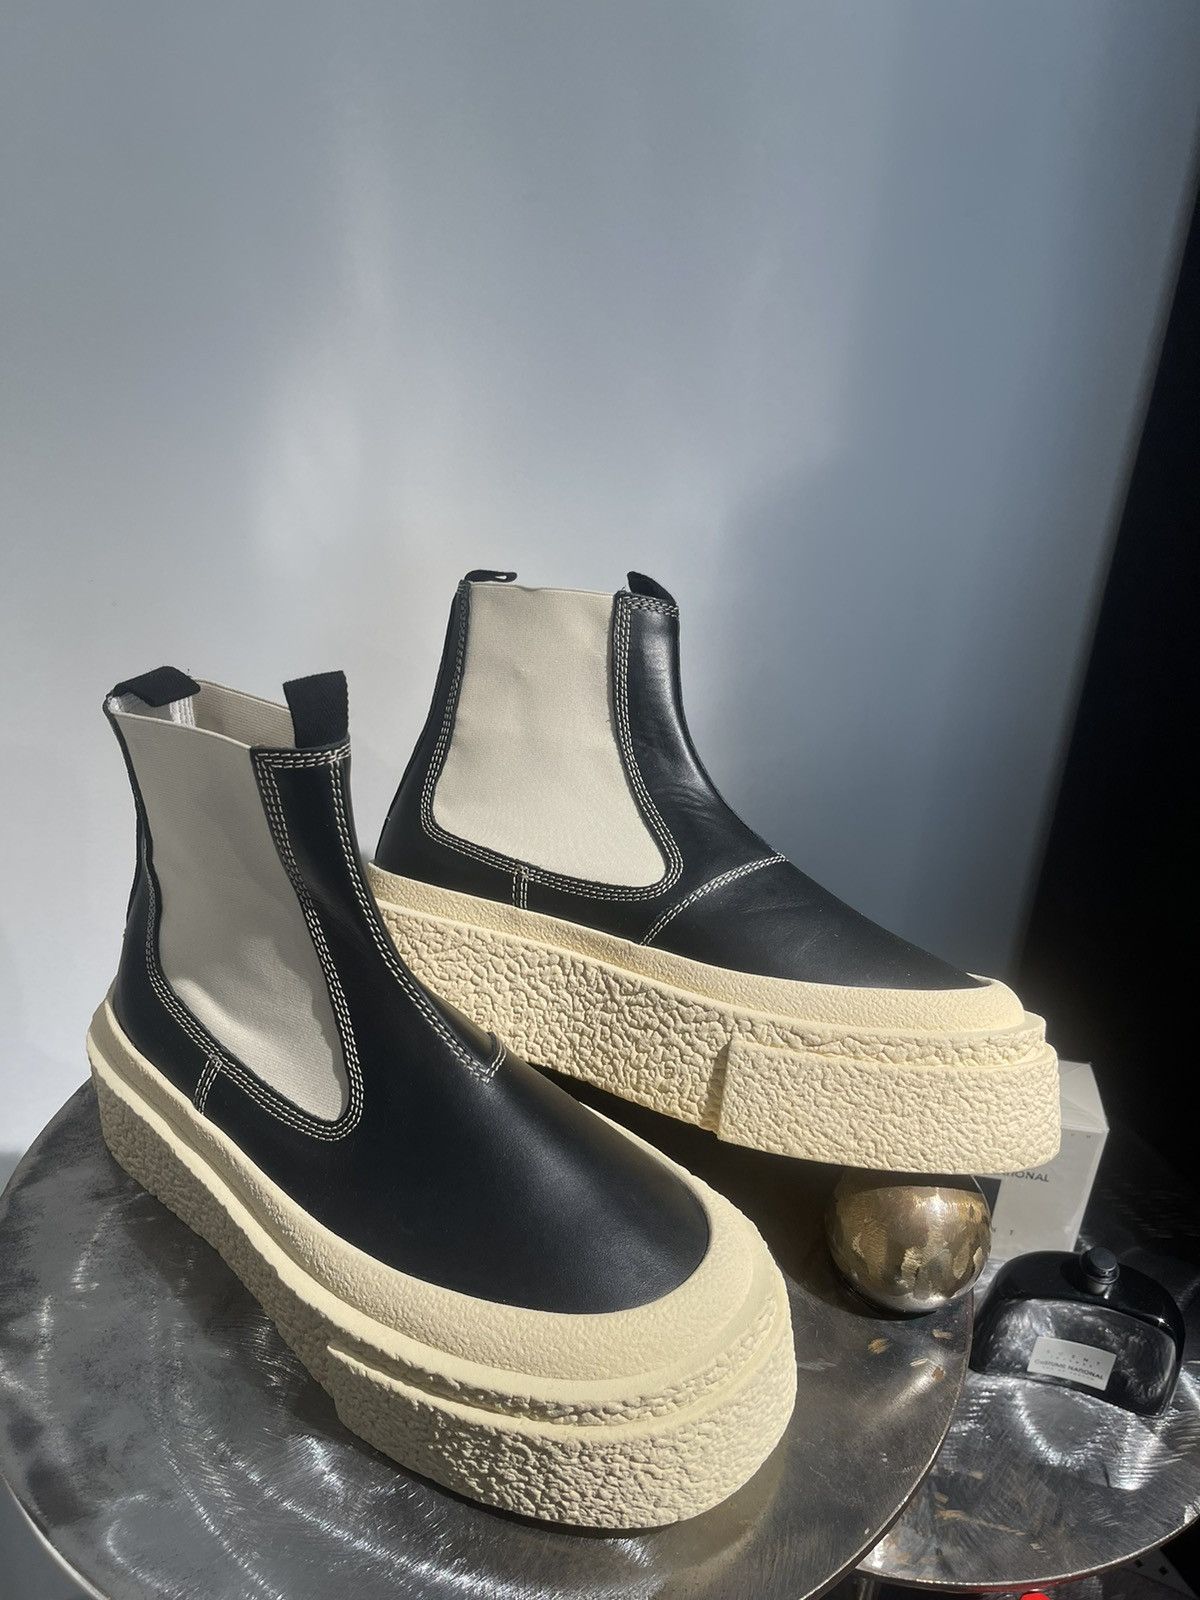 Maison Margiela Maison Margiela 6 round-toe leather ankle boots | Grailed